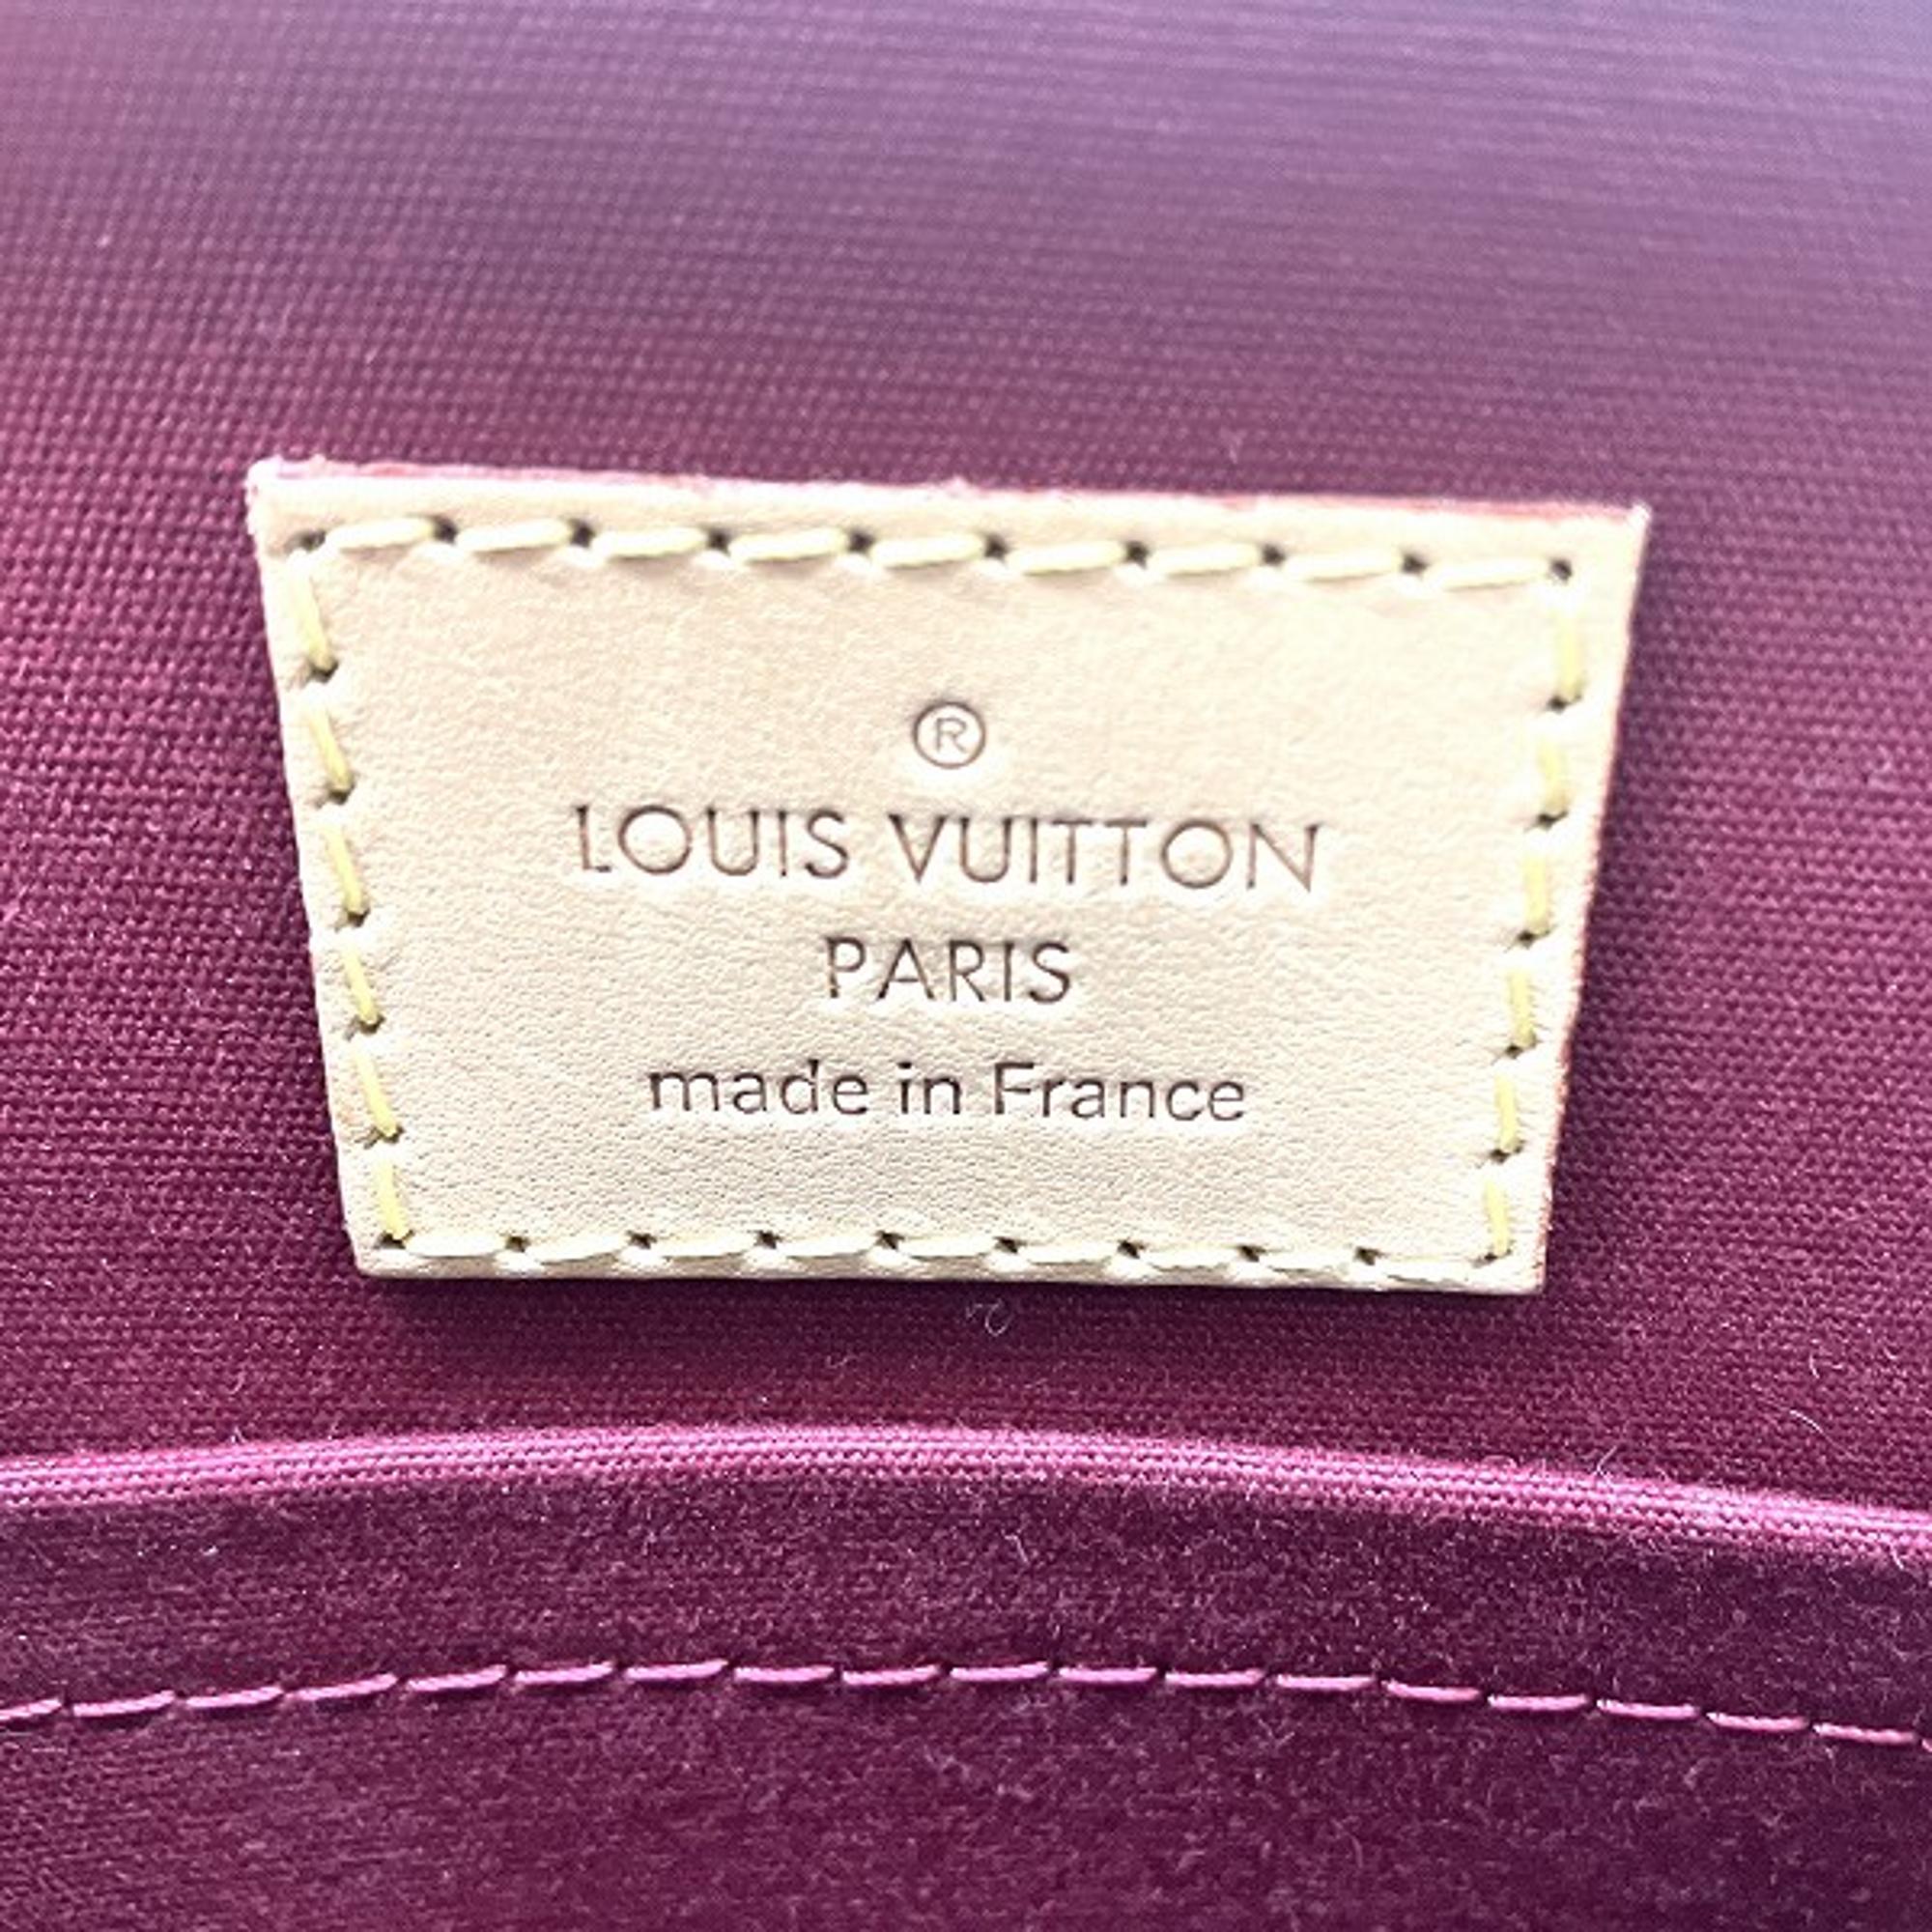 Louis Vuitton Red Monogram Vernis Sherwood PM Handbag